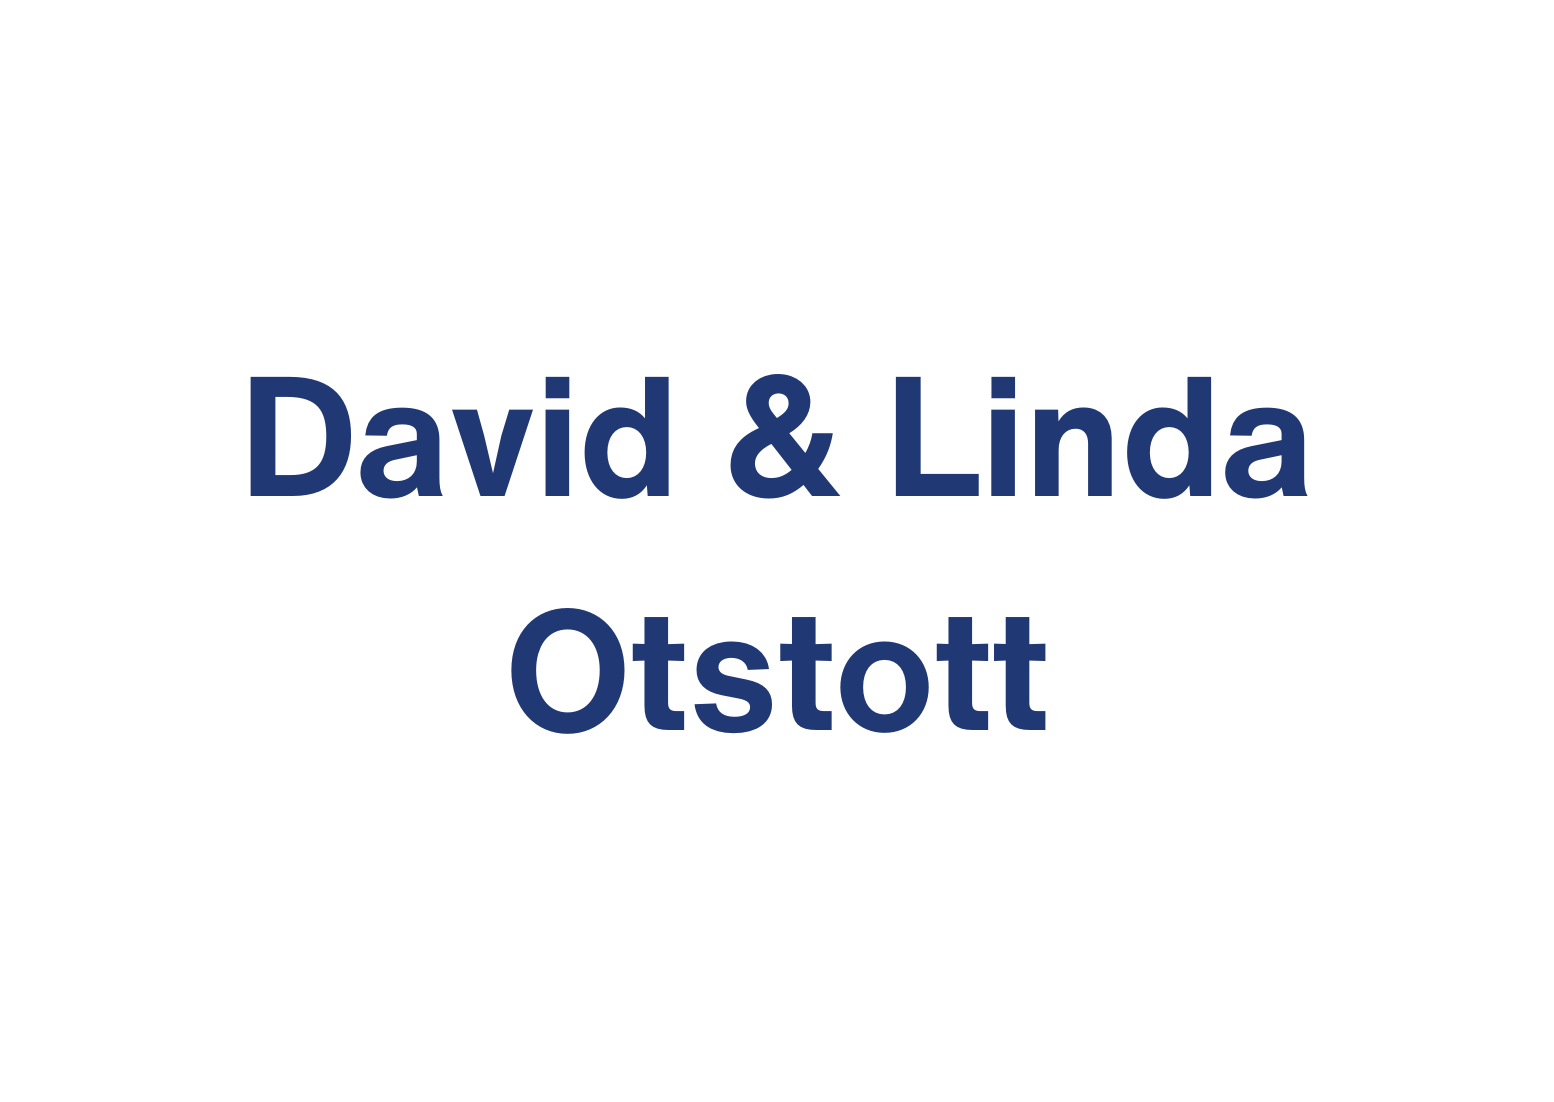 David & Linda Otstott